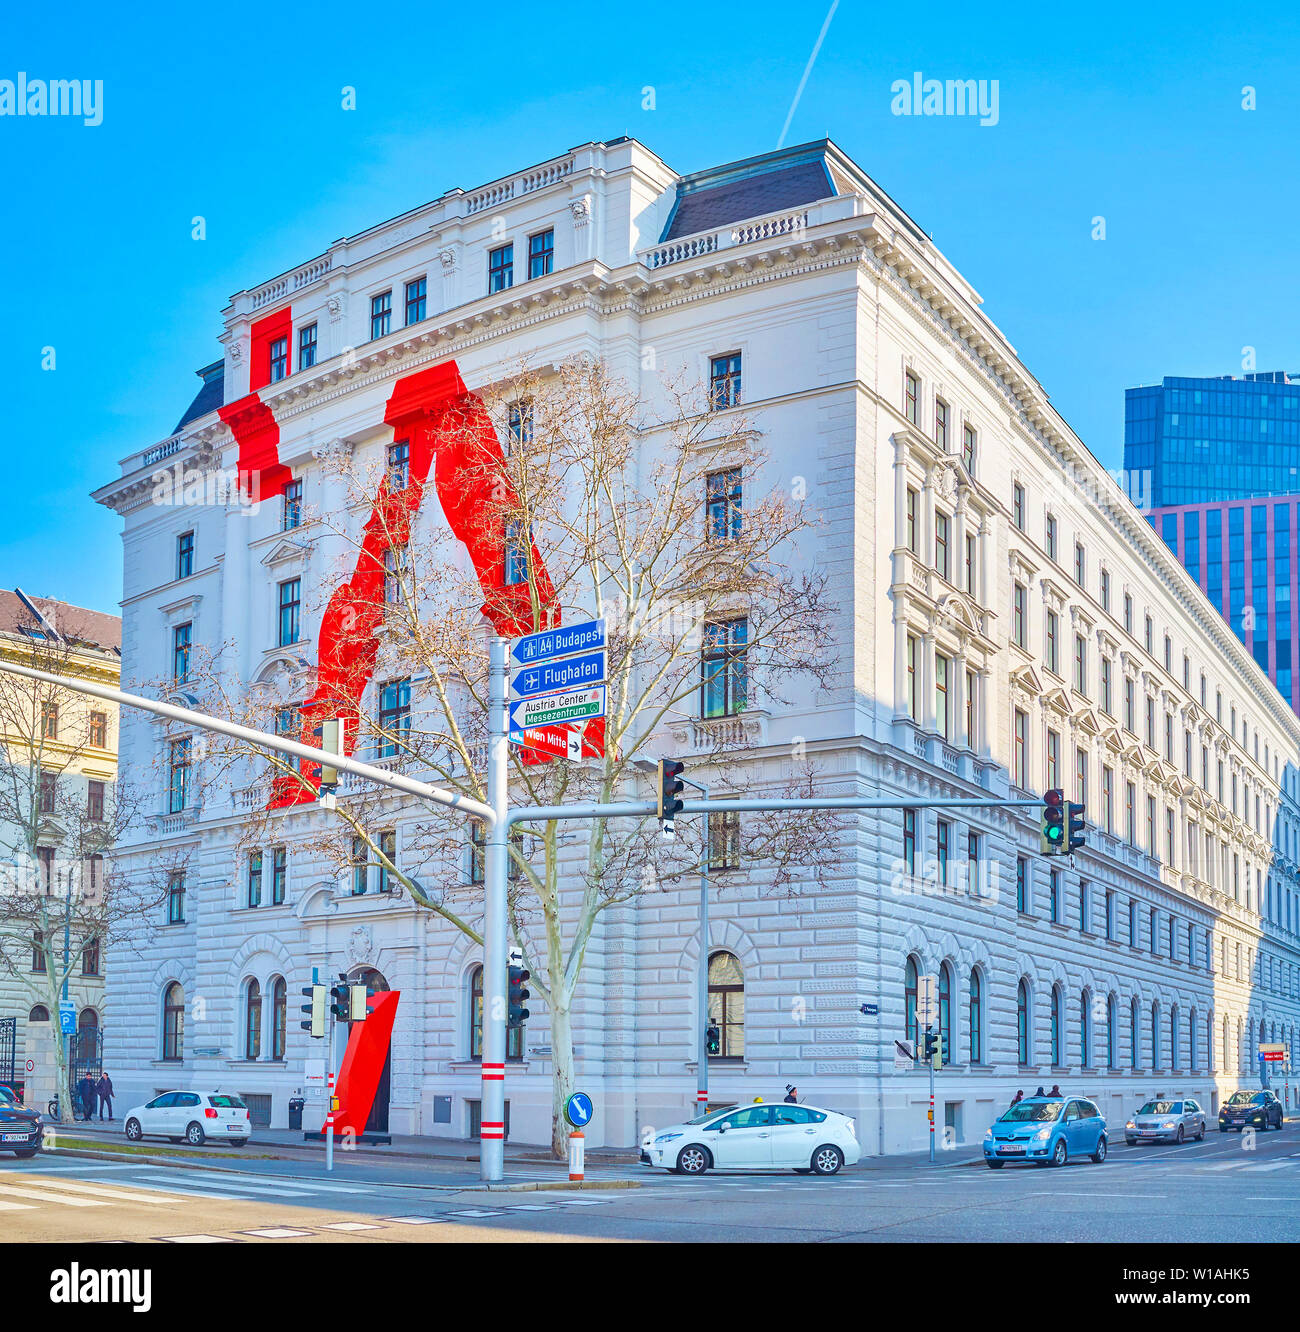 Vienne, Autriche - 18 février 2019 : La façade de la Bibliothèque historique de l'Université d'arts appliqués avec une décoration moderne, le 18 février Banque D'Images